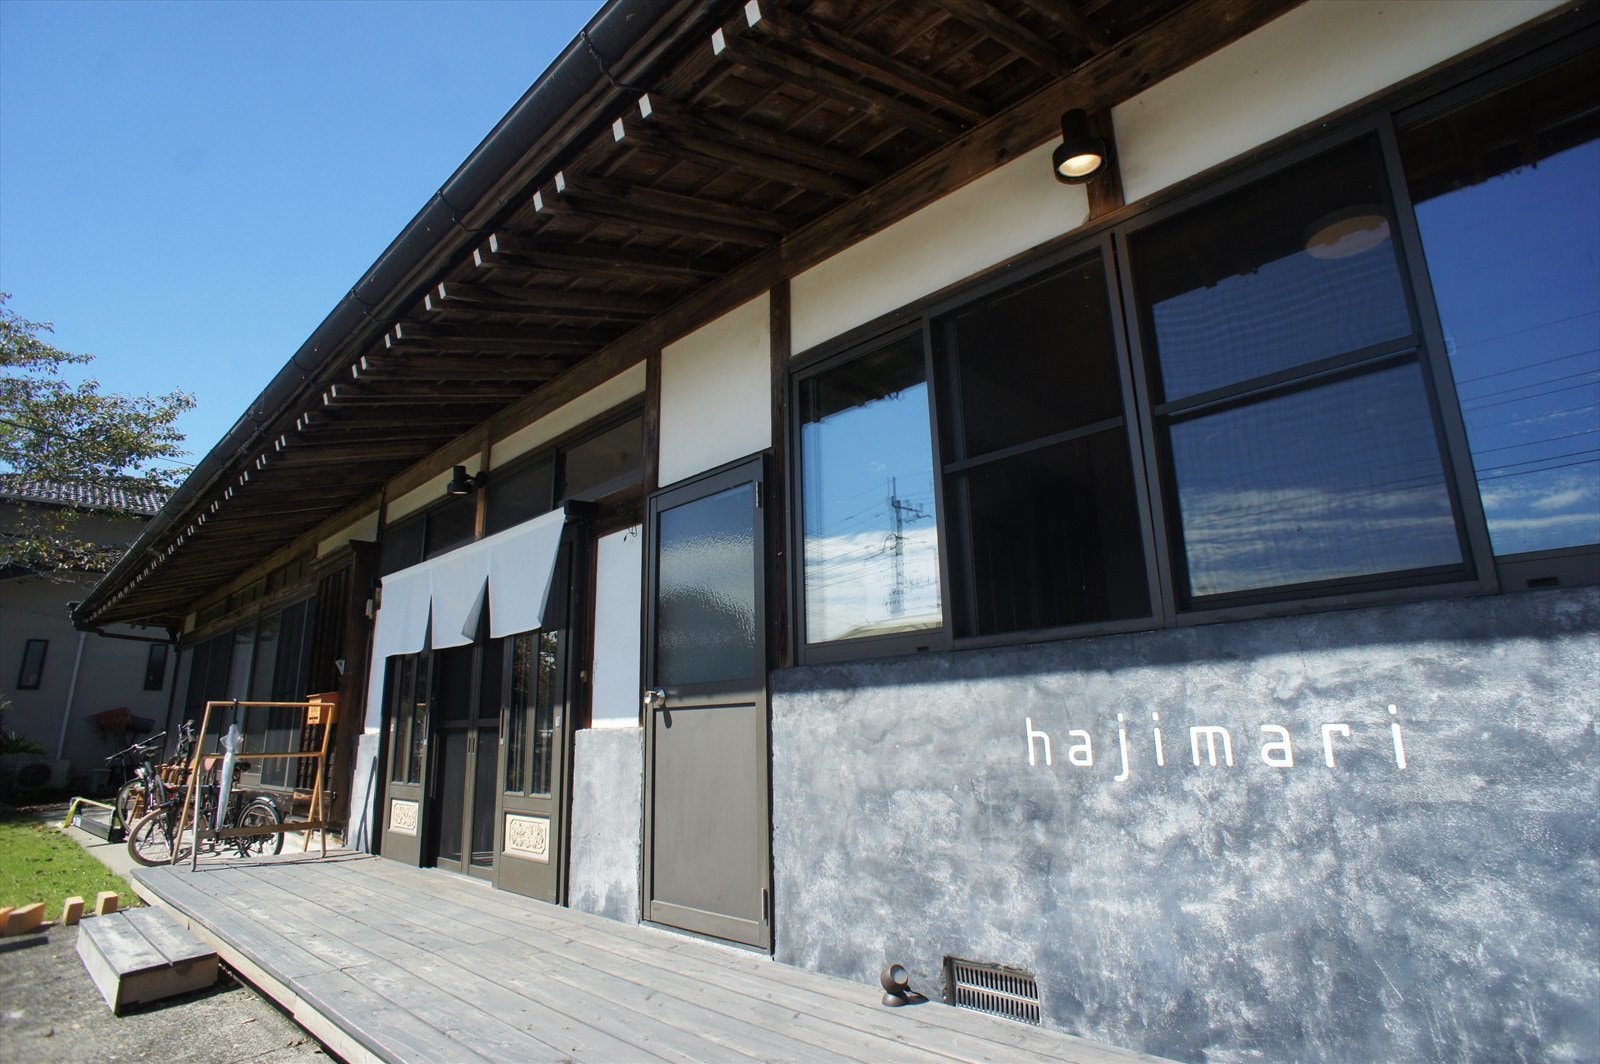 コーヒーと家具のお店「hajimari」ハジマリ